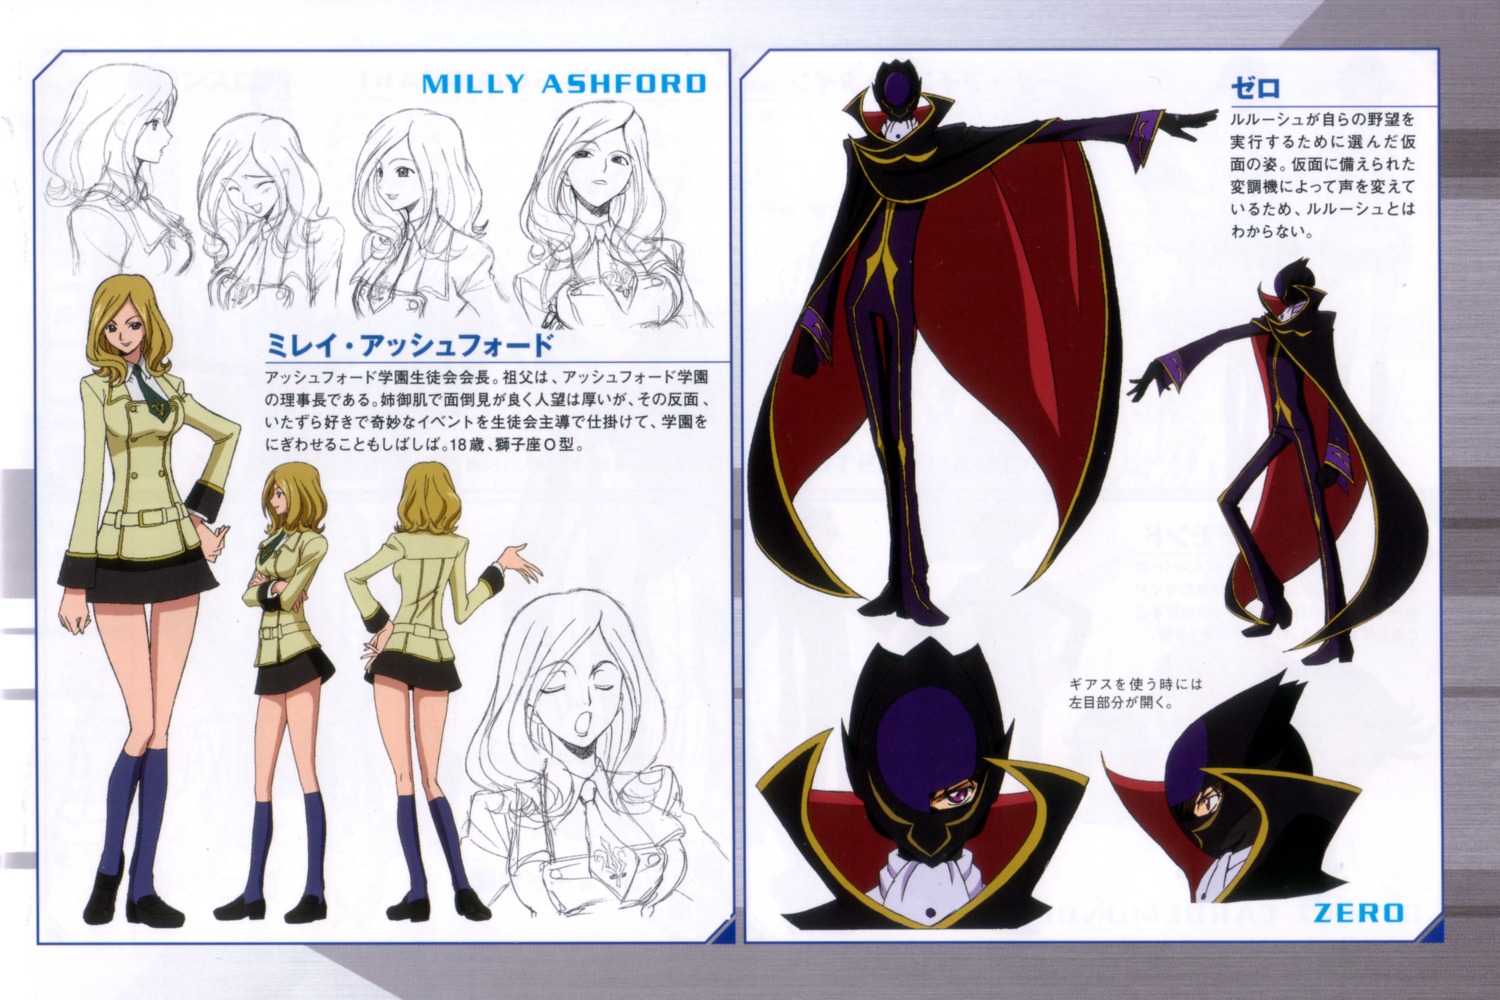 Kimura Takahiro Code Geass Lelouch Lamperouge Milly Ashford Zero Code Geass Character Design Seifuku Sketch Yande Re